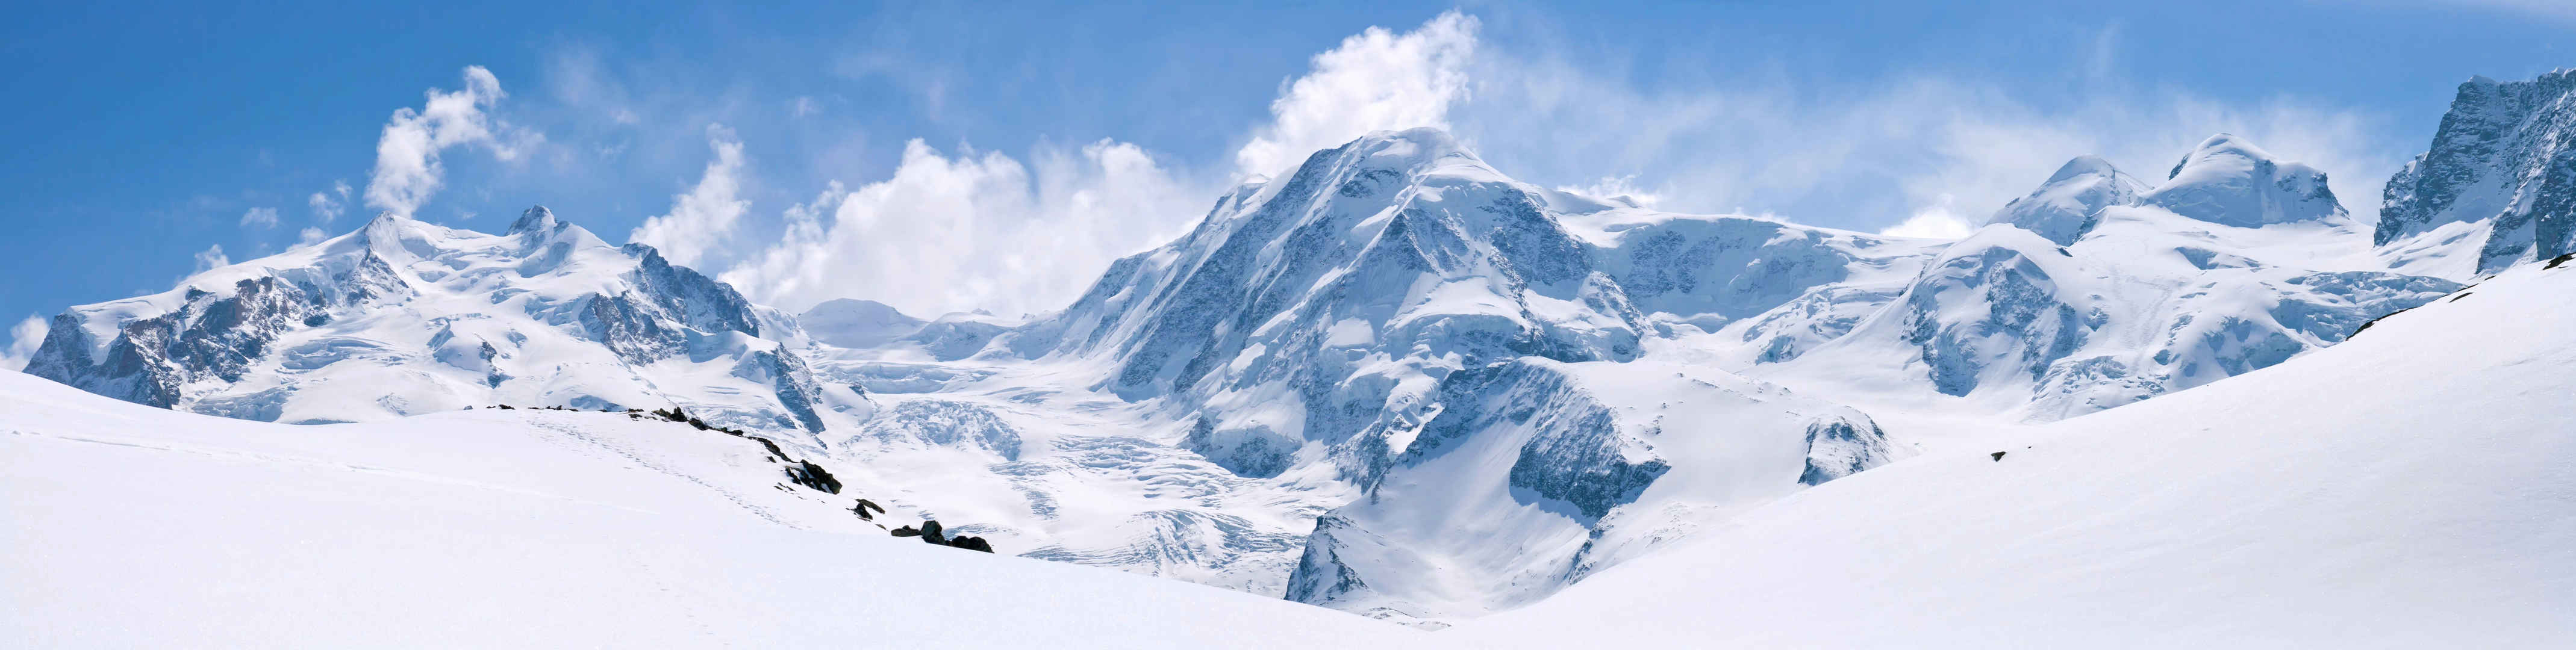 马特洪峰峰值阿尔卑斯山地区瑞士在蓝色天空全景-